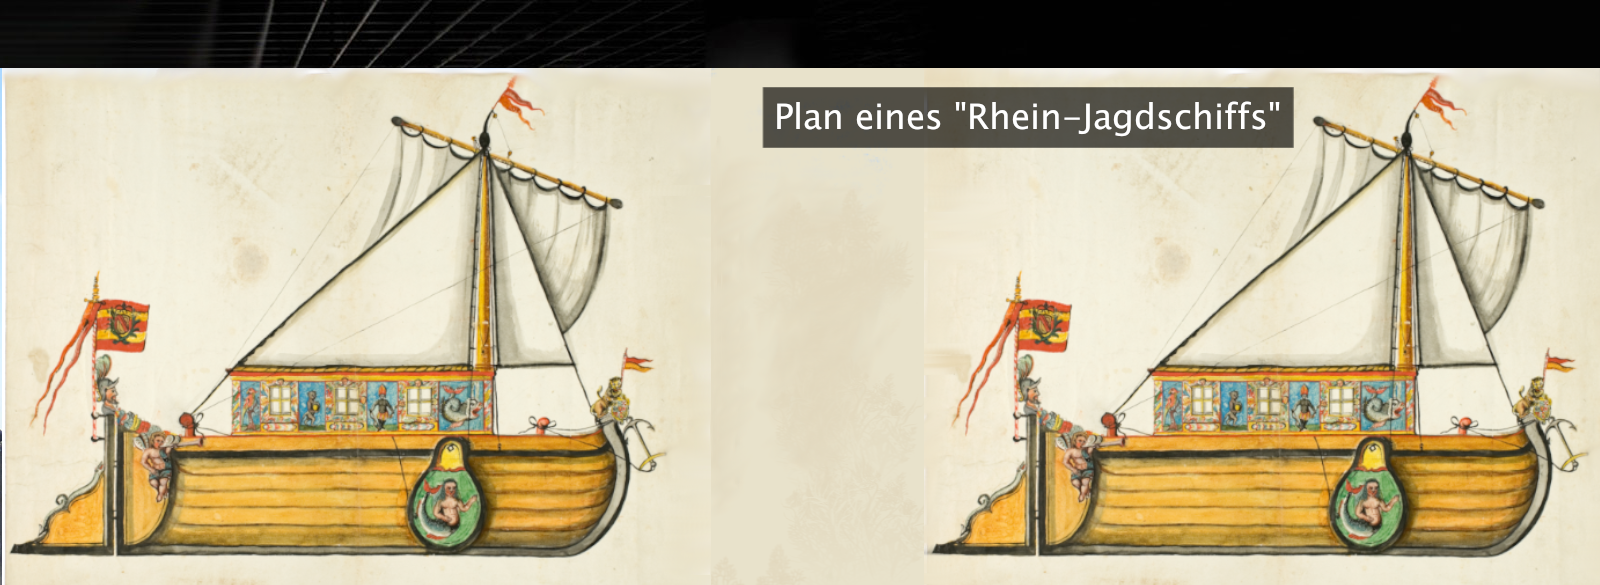 Plan eines Rhein-Jagdschiffs (Generallandesarchiv Karlsruhe)